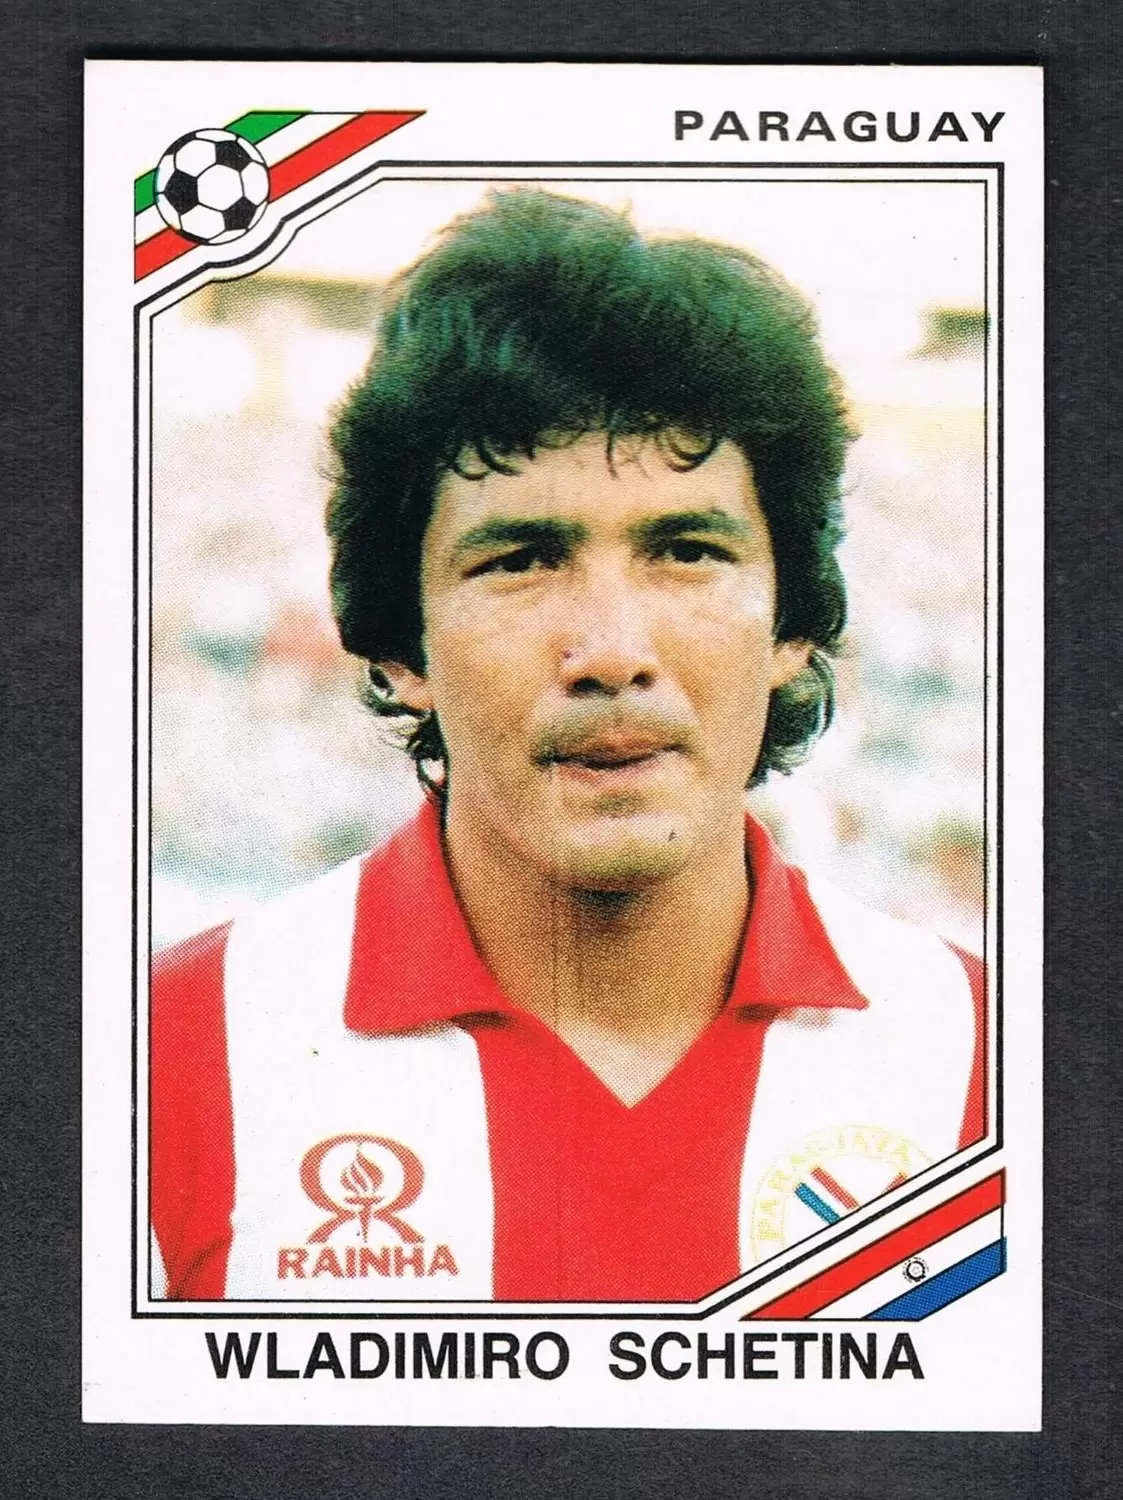 Mexico 86 World Cup - Wladirmiro Schetina  - Paraguay